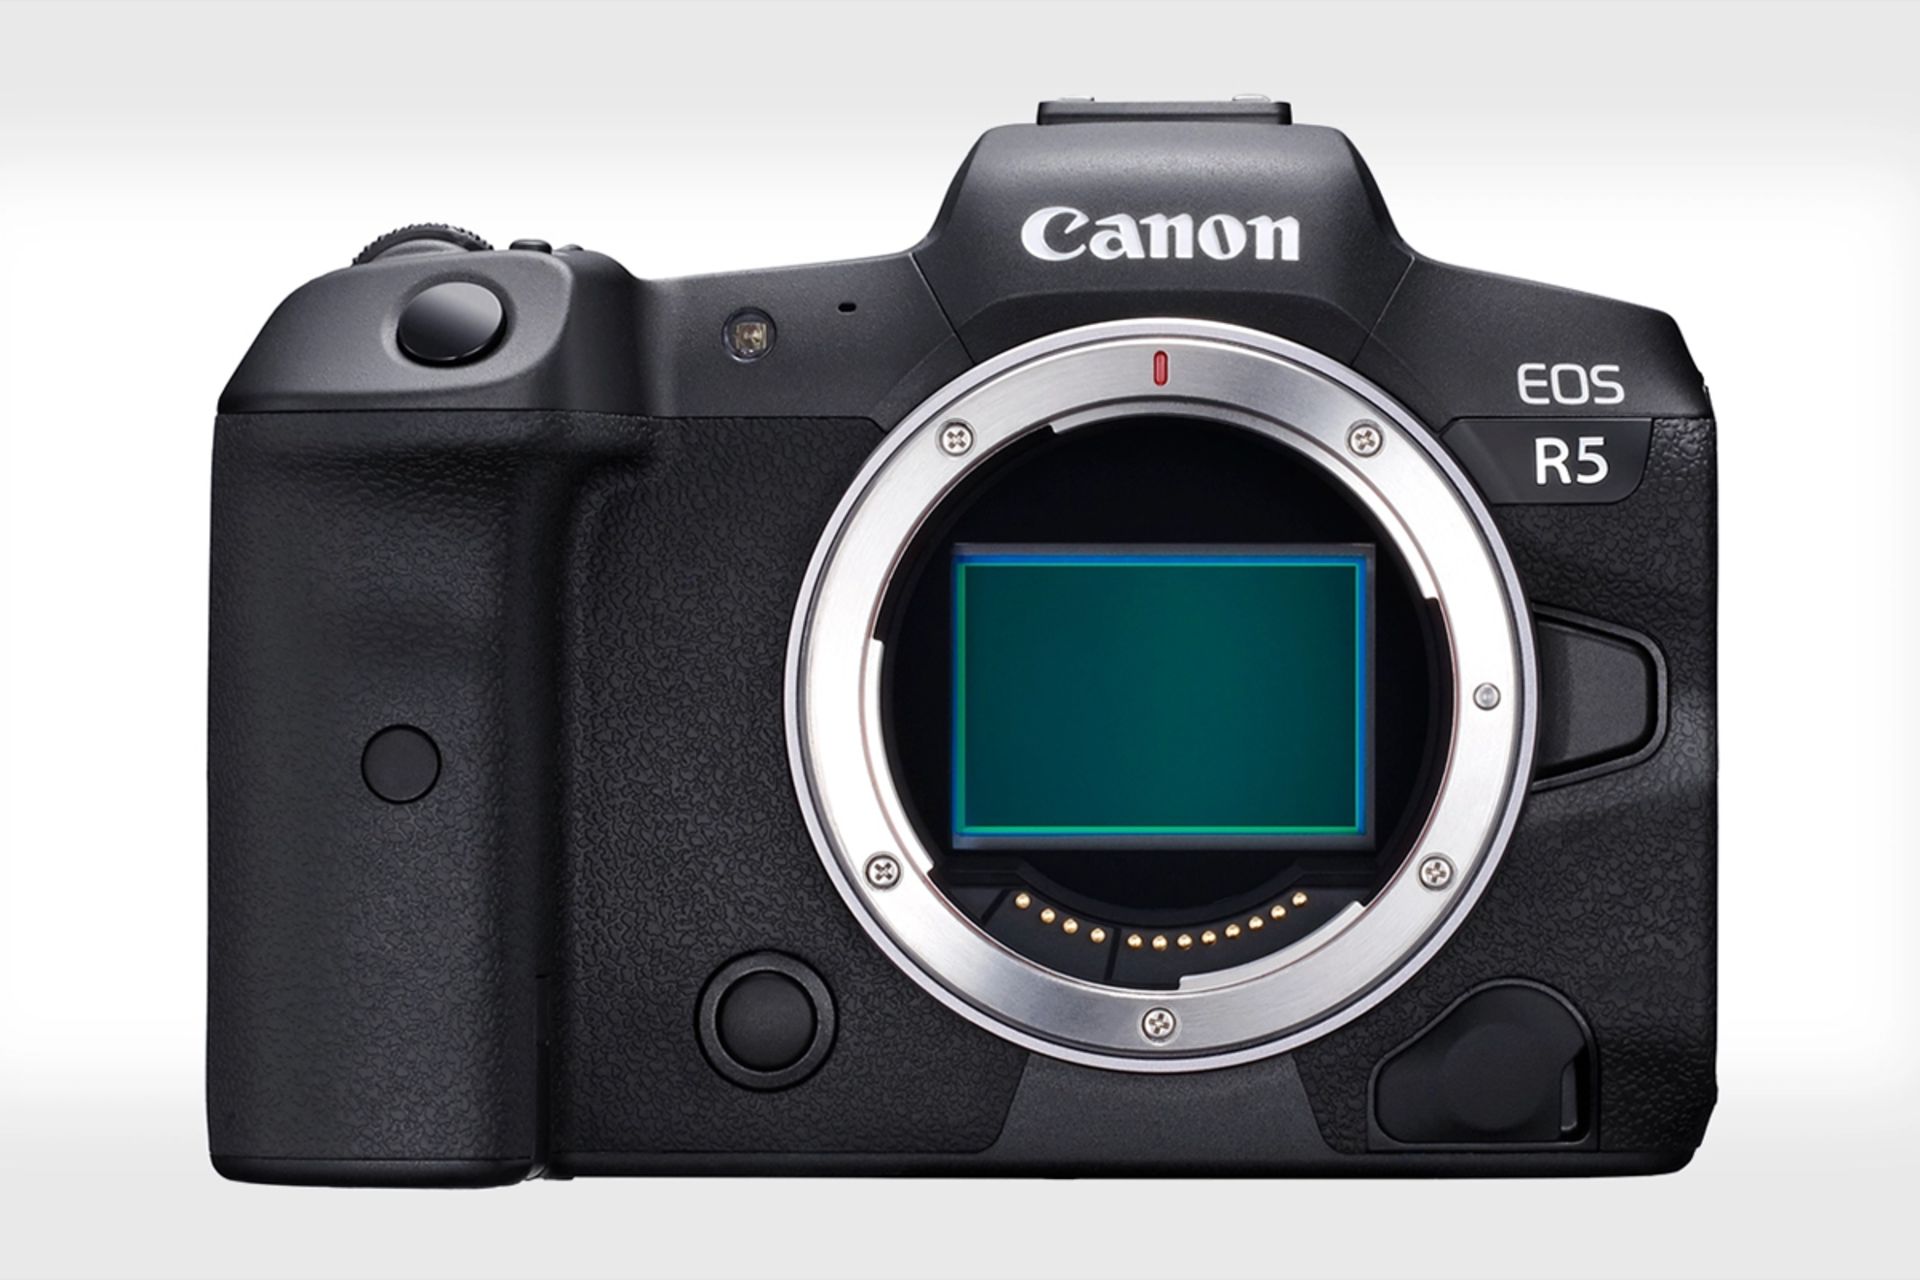 مرجع متخصصين ايران دوربين كانن اي او اس آر 5 / Canon EOS R5